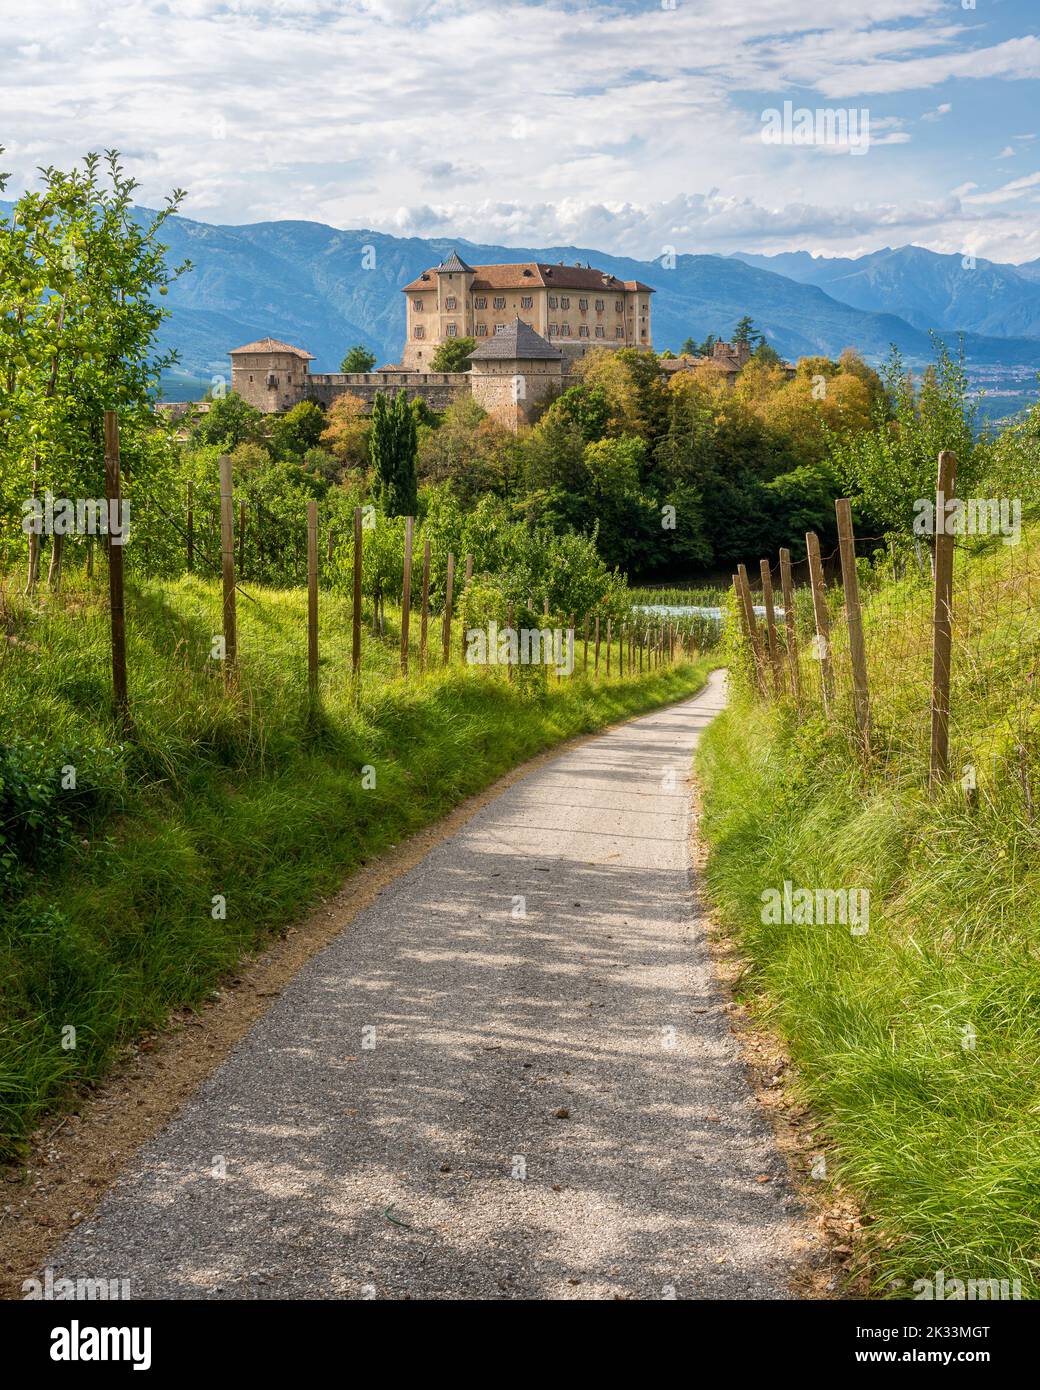 Vista pittoresca del Castello di Thun, Val di Non, in provincia di Trento, Trentino Alto Adige, Italia. Foto Stock